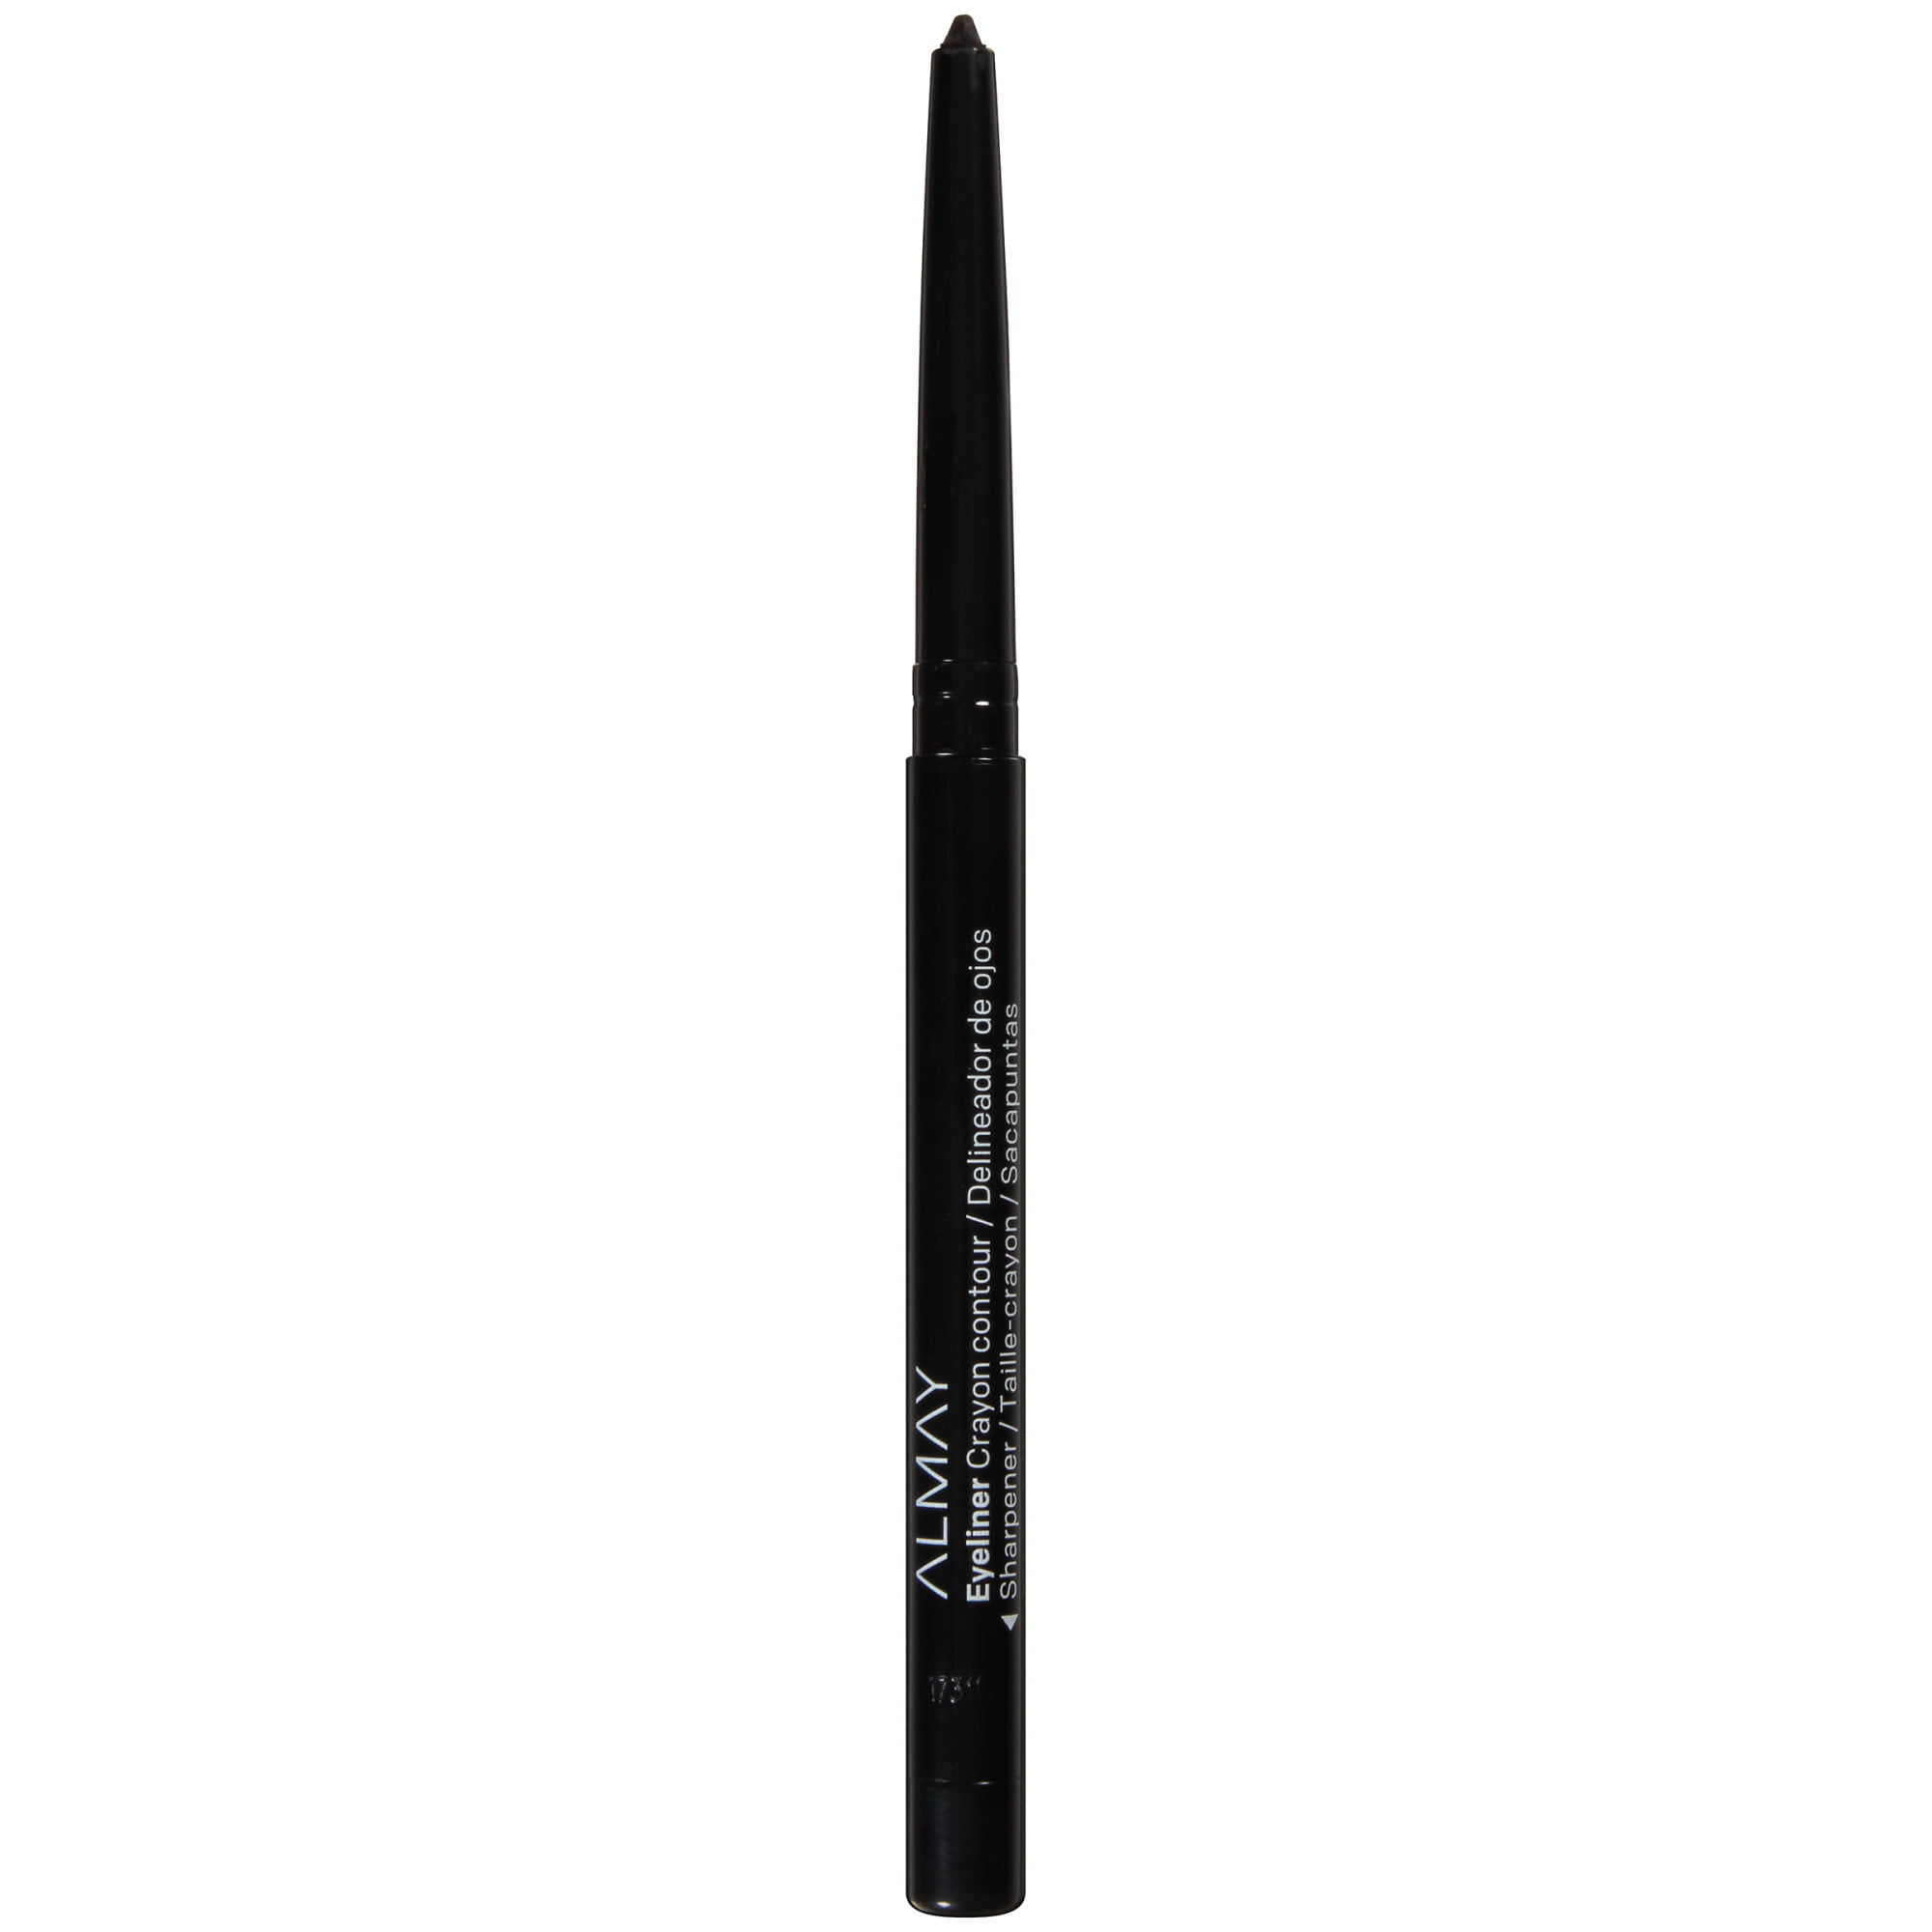 Almay Crayon Contour Water Resistant Eyeliner Pencil, 205 Black - image 4 of 14